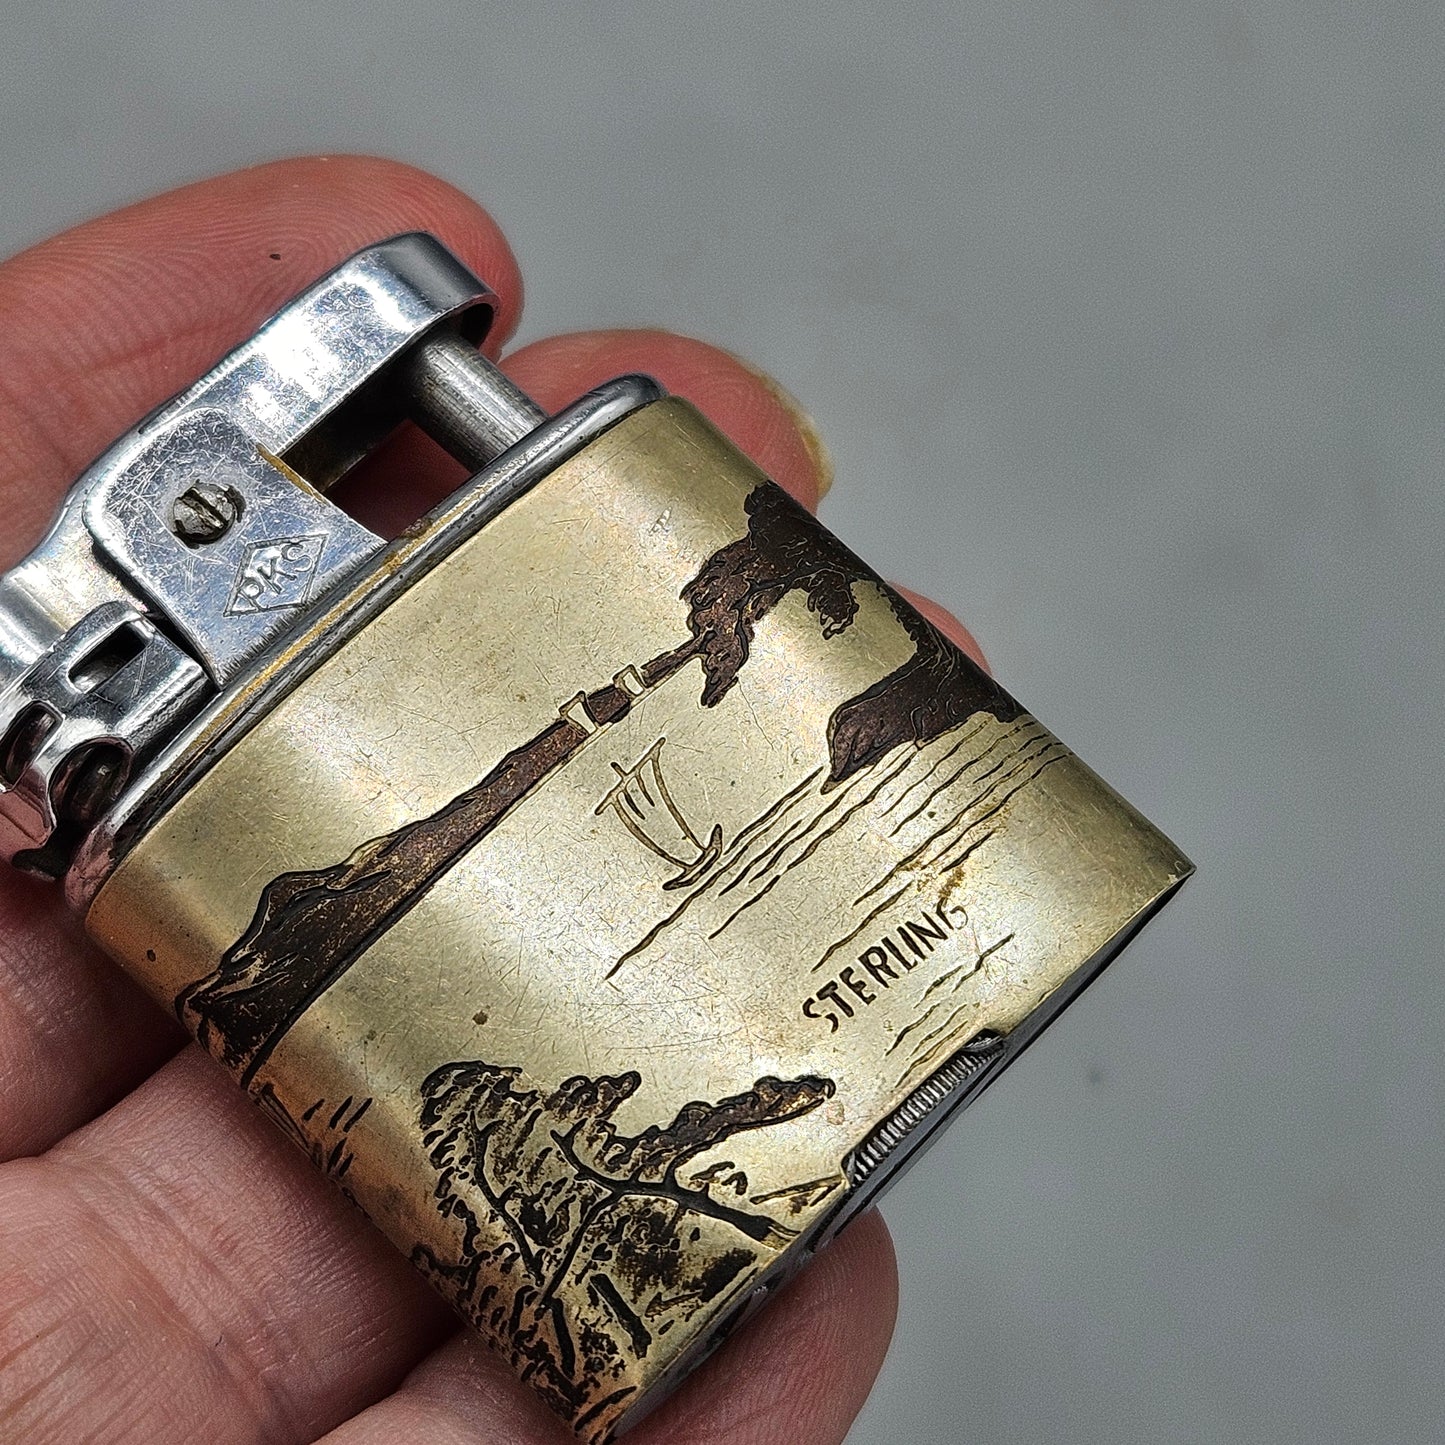 Vintage Sterling Silver Japanese Cigarette Lighter with Scene